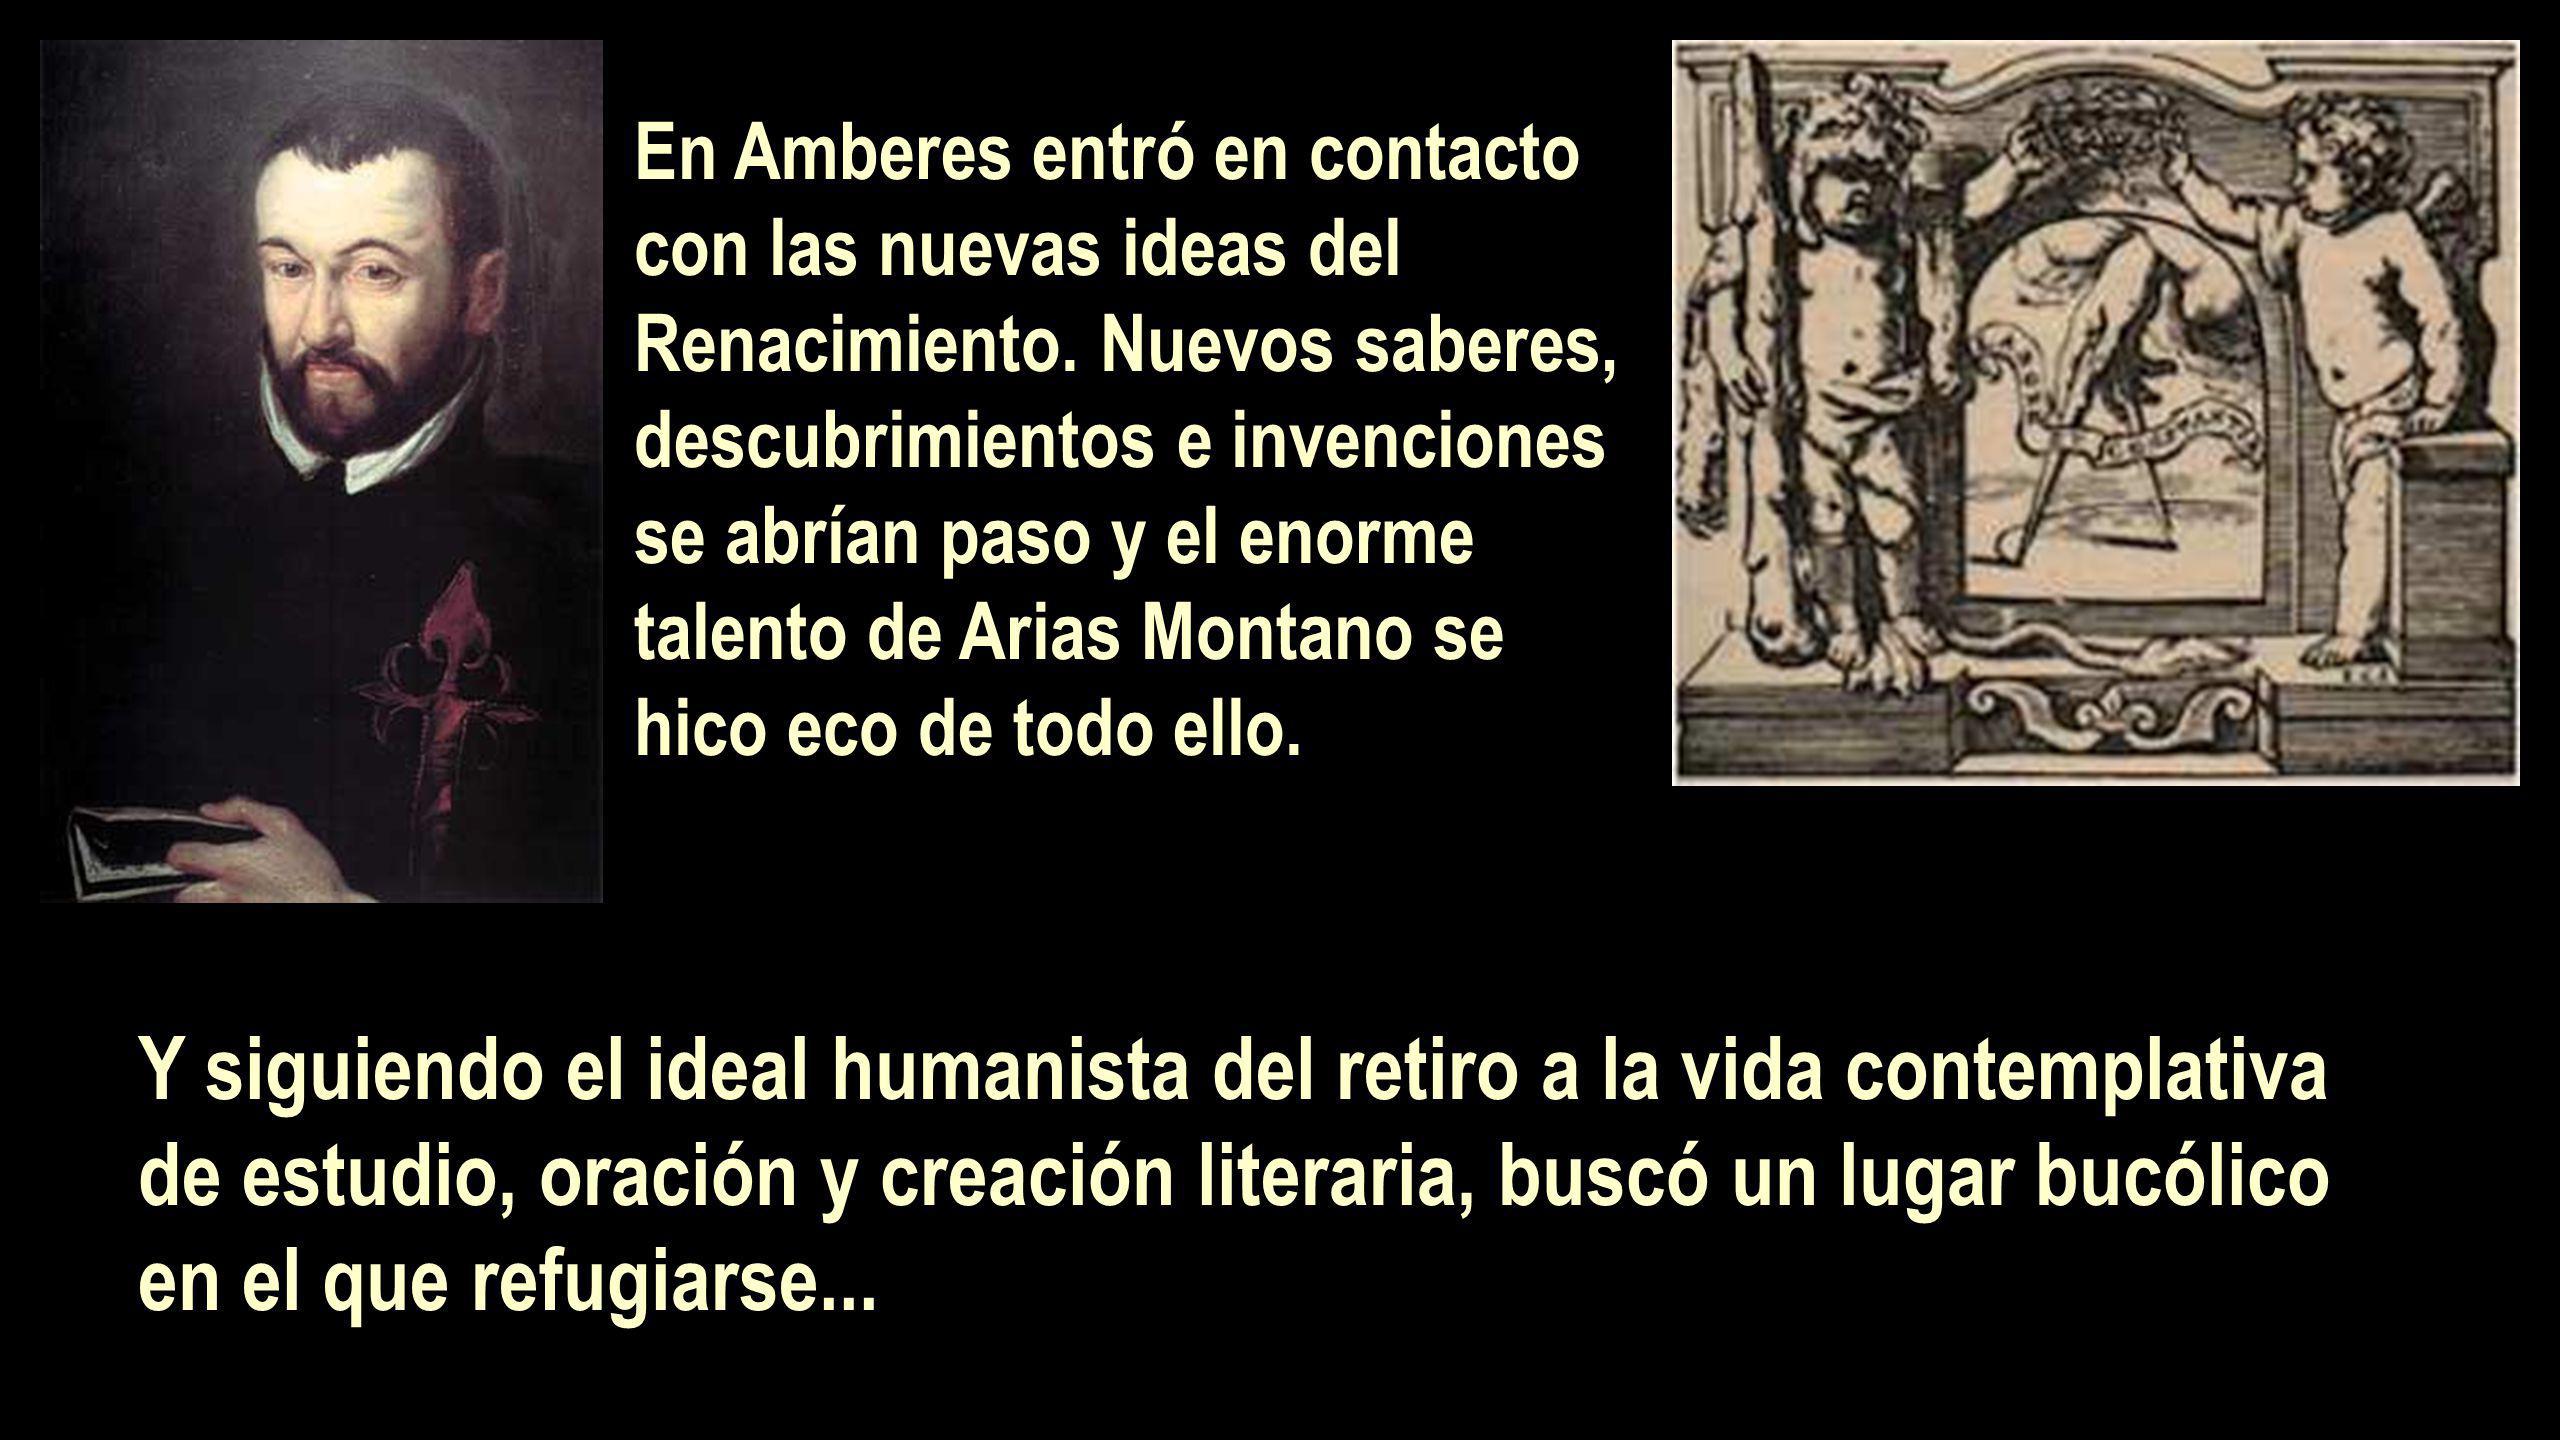 En Amberes entró en contacto con las nuevas ideas del Renacimiento.